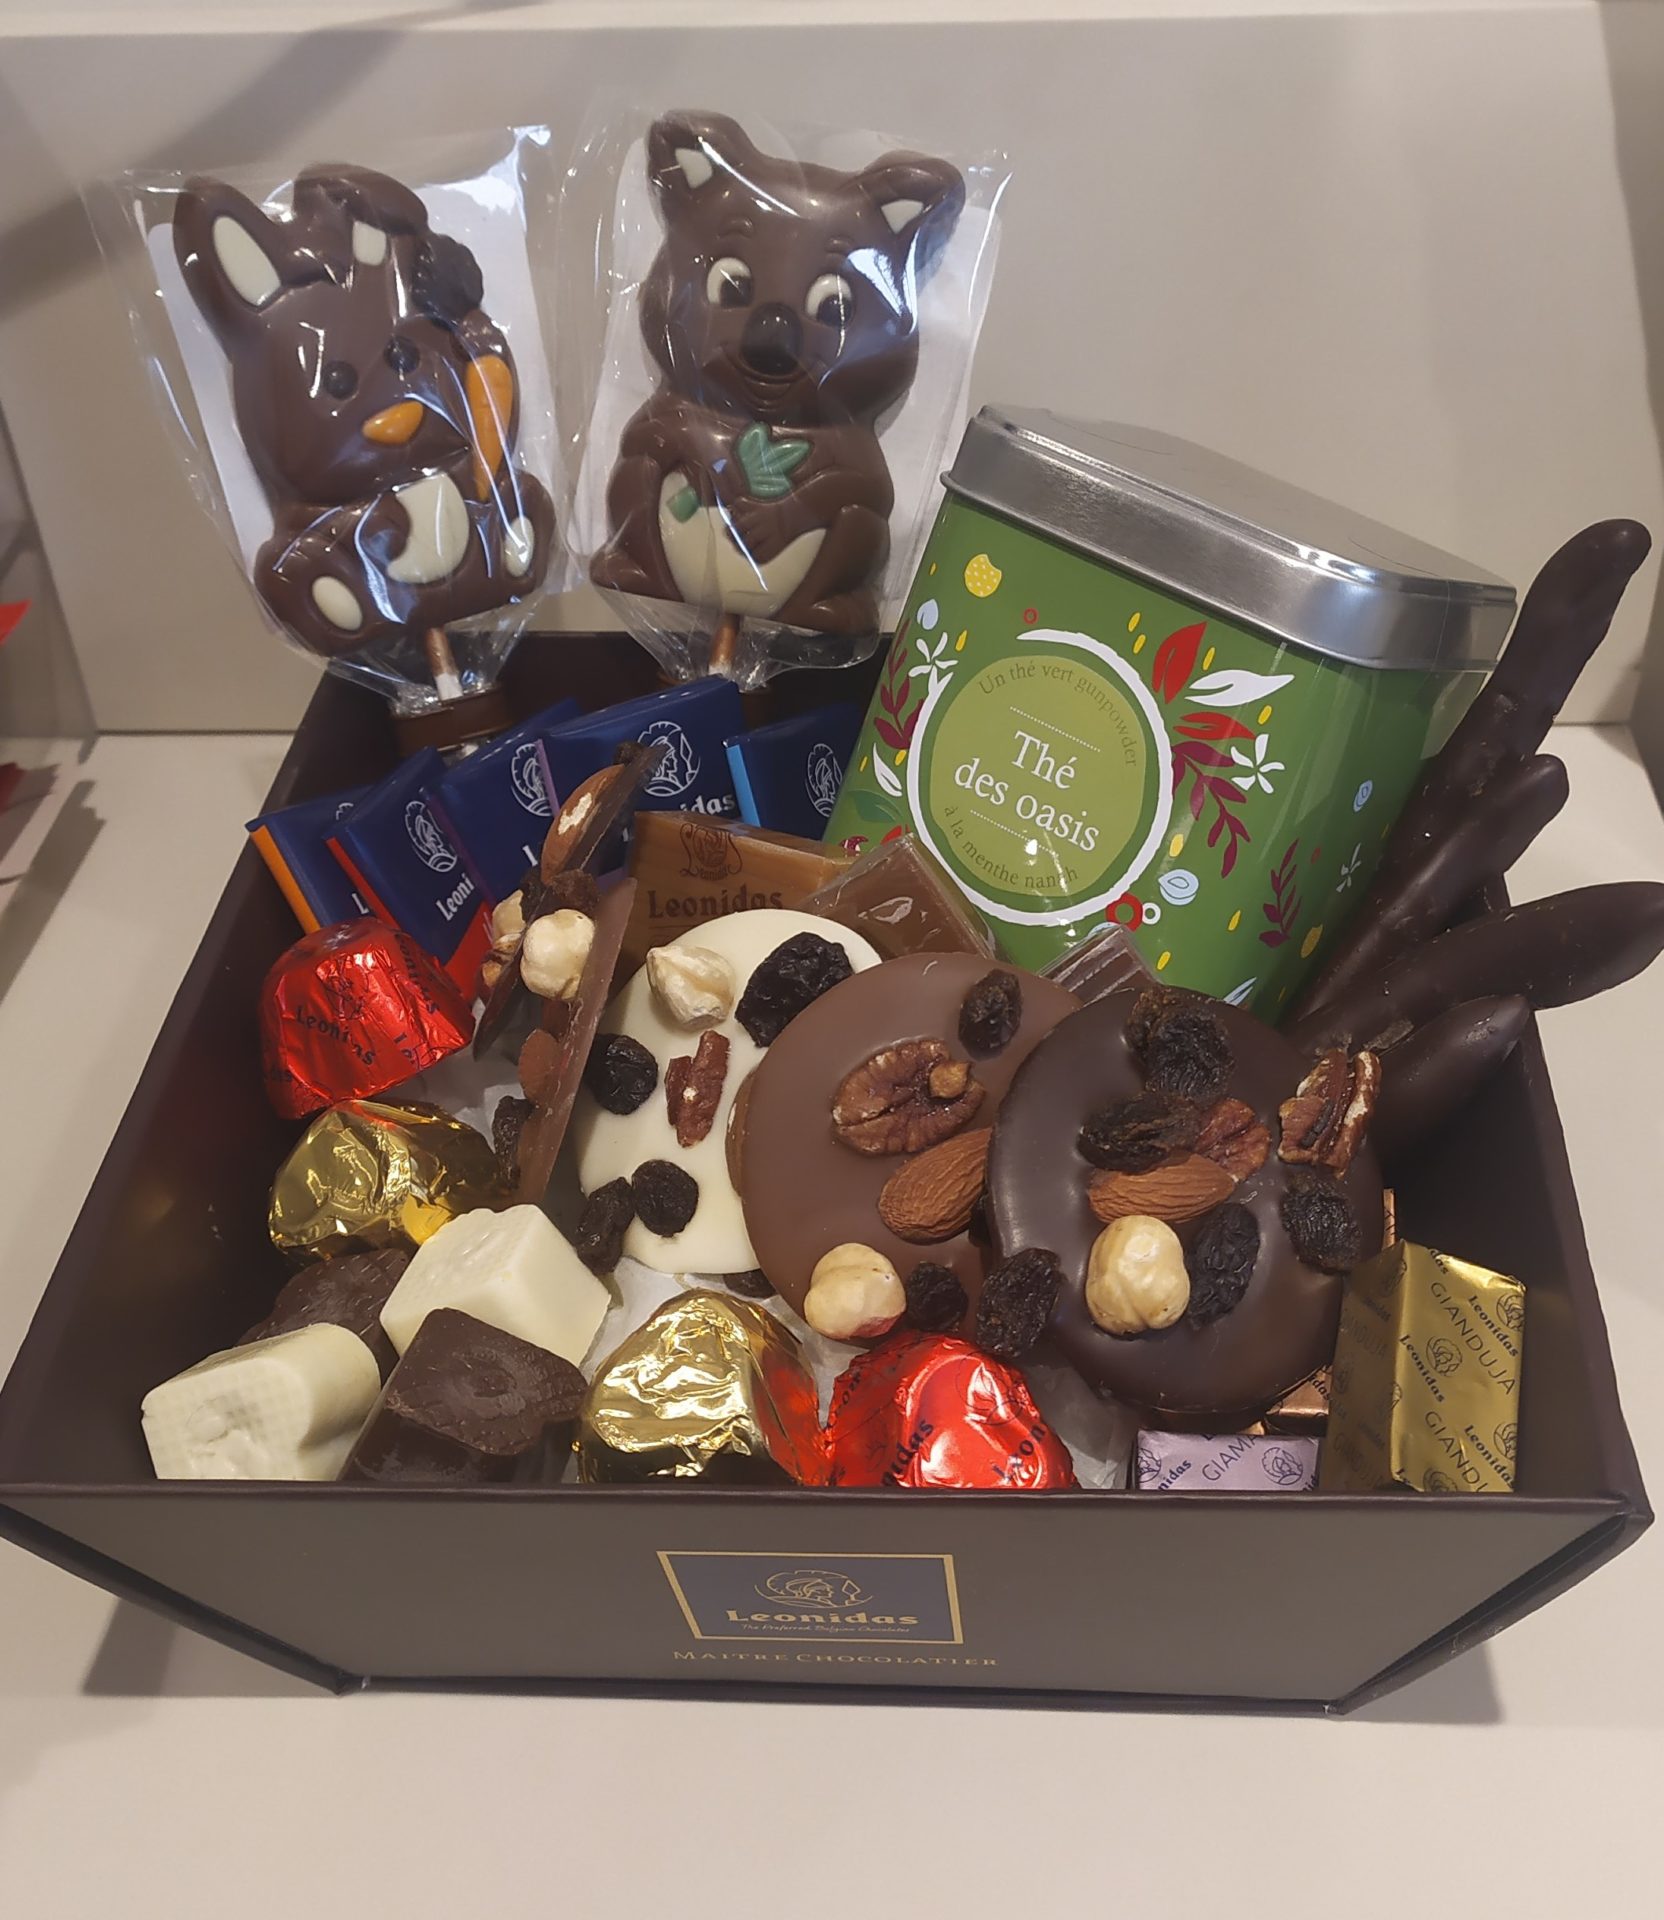 Panier Cadeaux - Thé et Chocolat - Leonidas